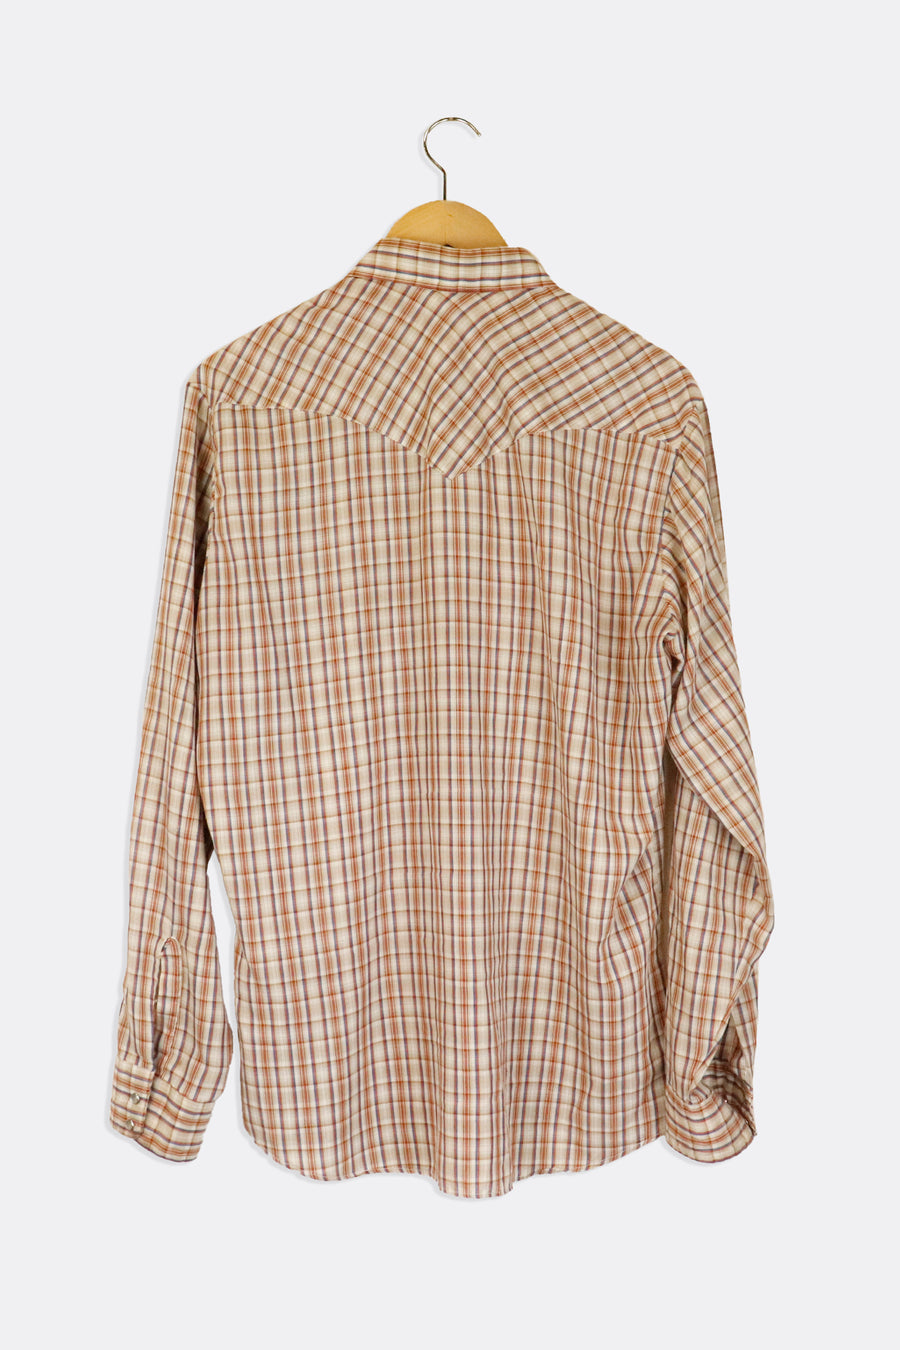 Vintage Levis Plaid Collared Button Up Longsleeve T Shirt Sz L